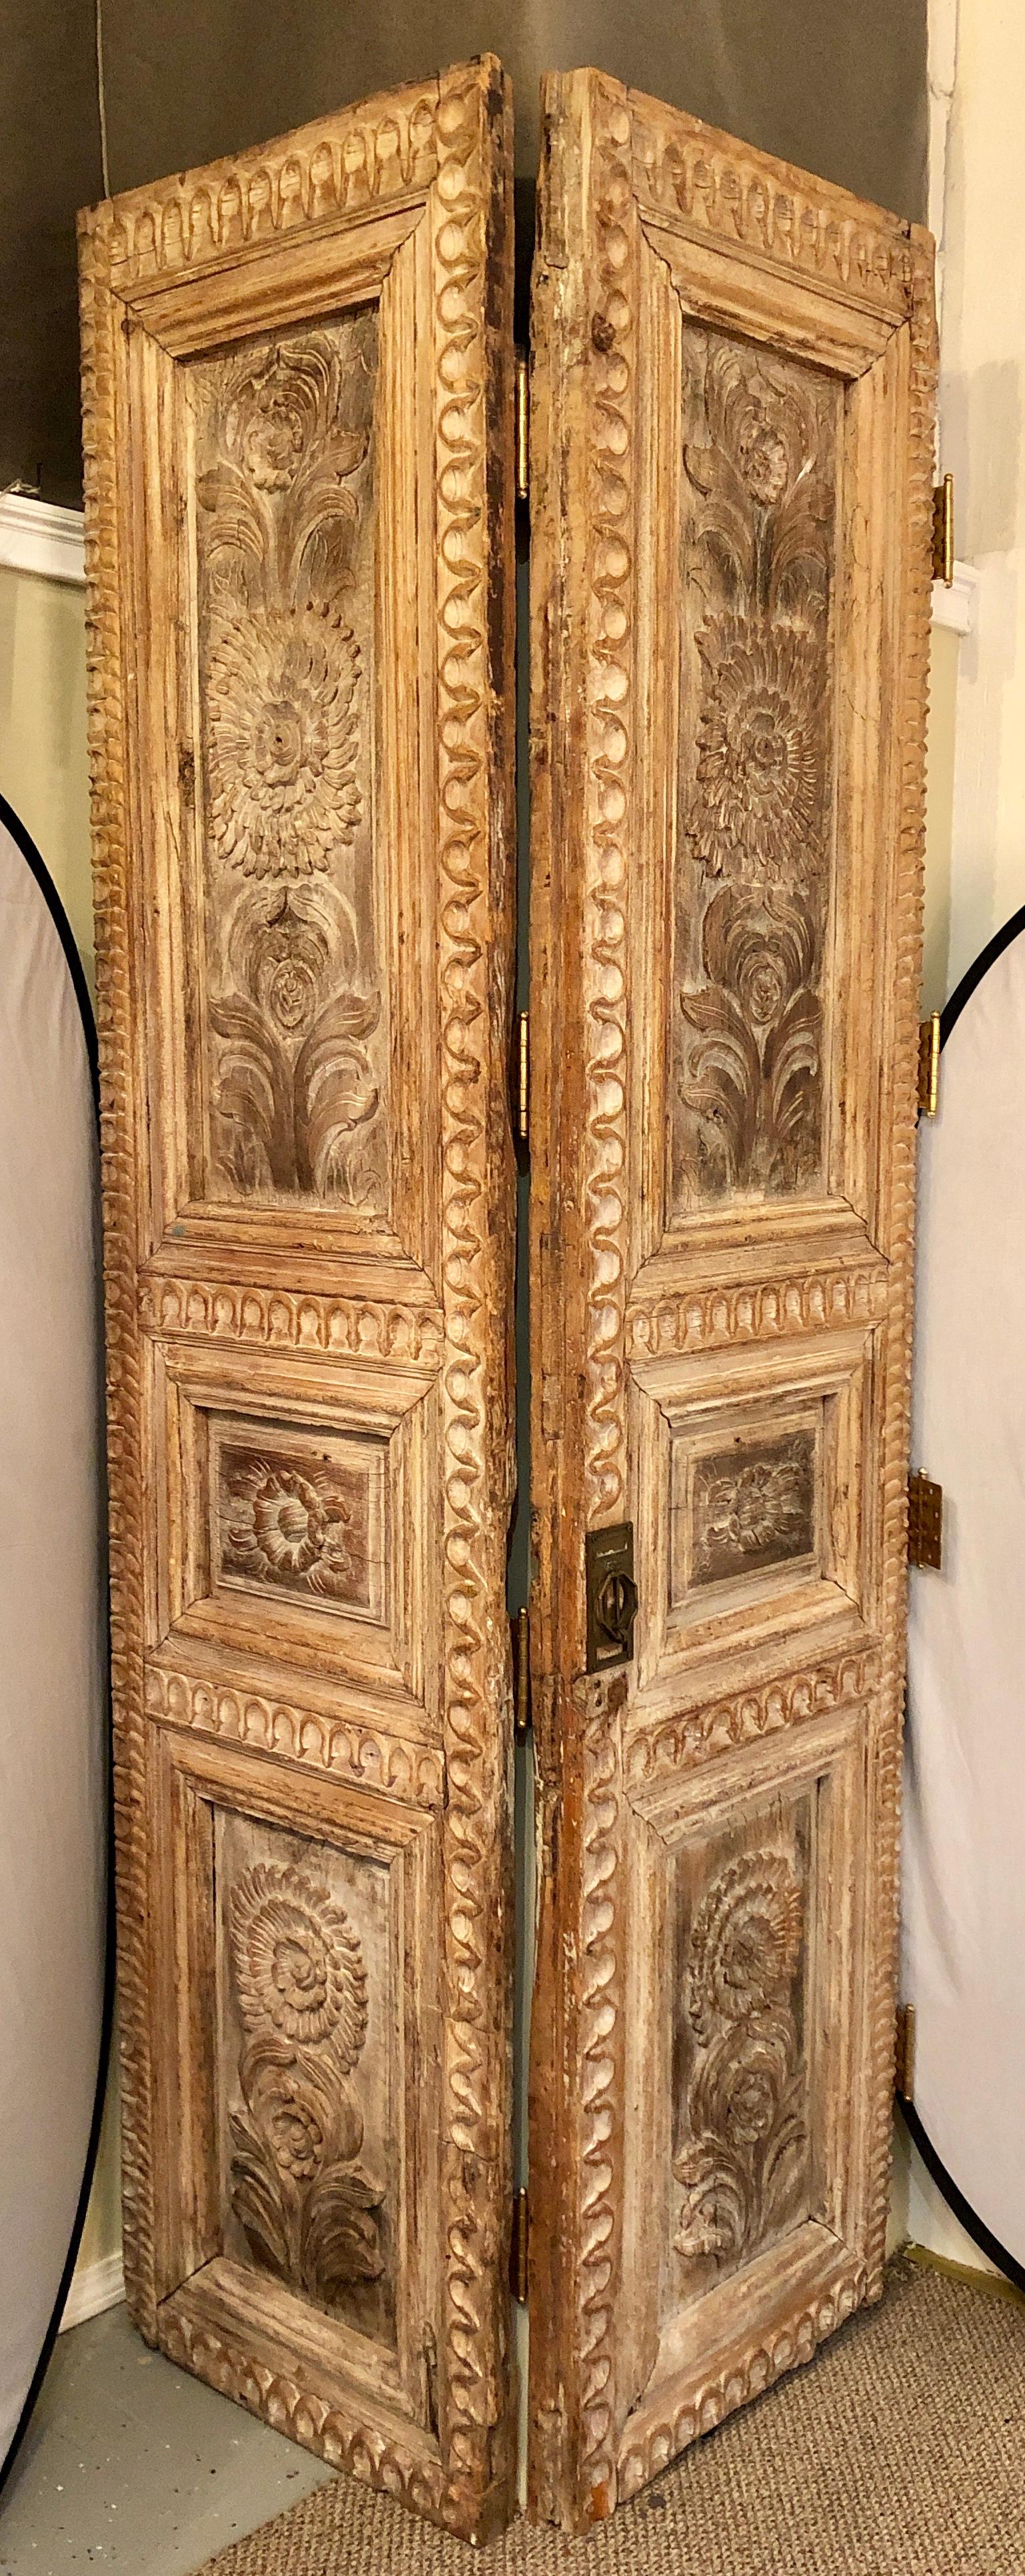 Zwei monumentale Folk-Art-Türen, die als Raumteiler montiert sind. Diese großen und beeindruckenden, sehr fein geschnitzten Türen sind mit Scharnieren verbunden und können leicht auseinandergenommen werden, um für den vorgesehenen Zweck oder als